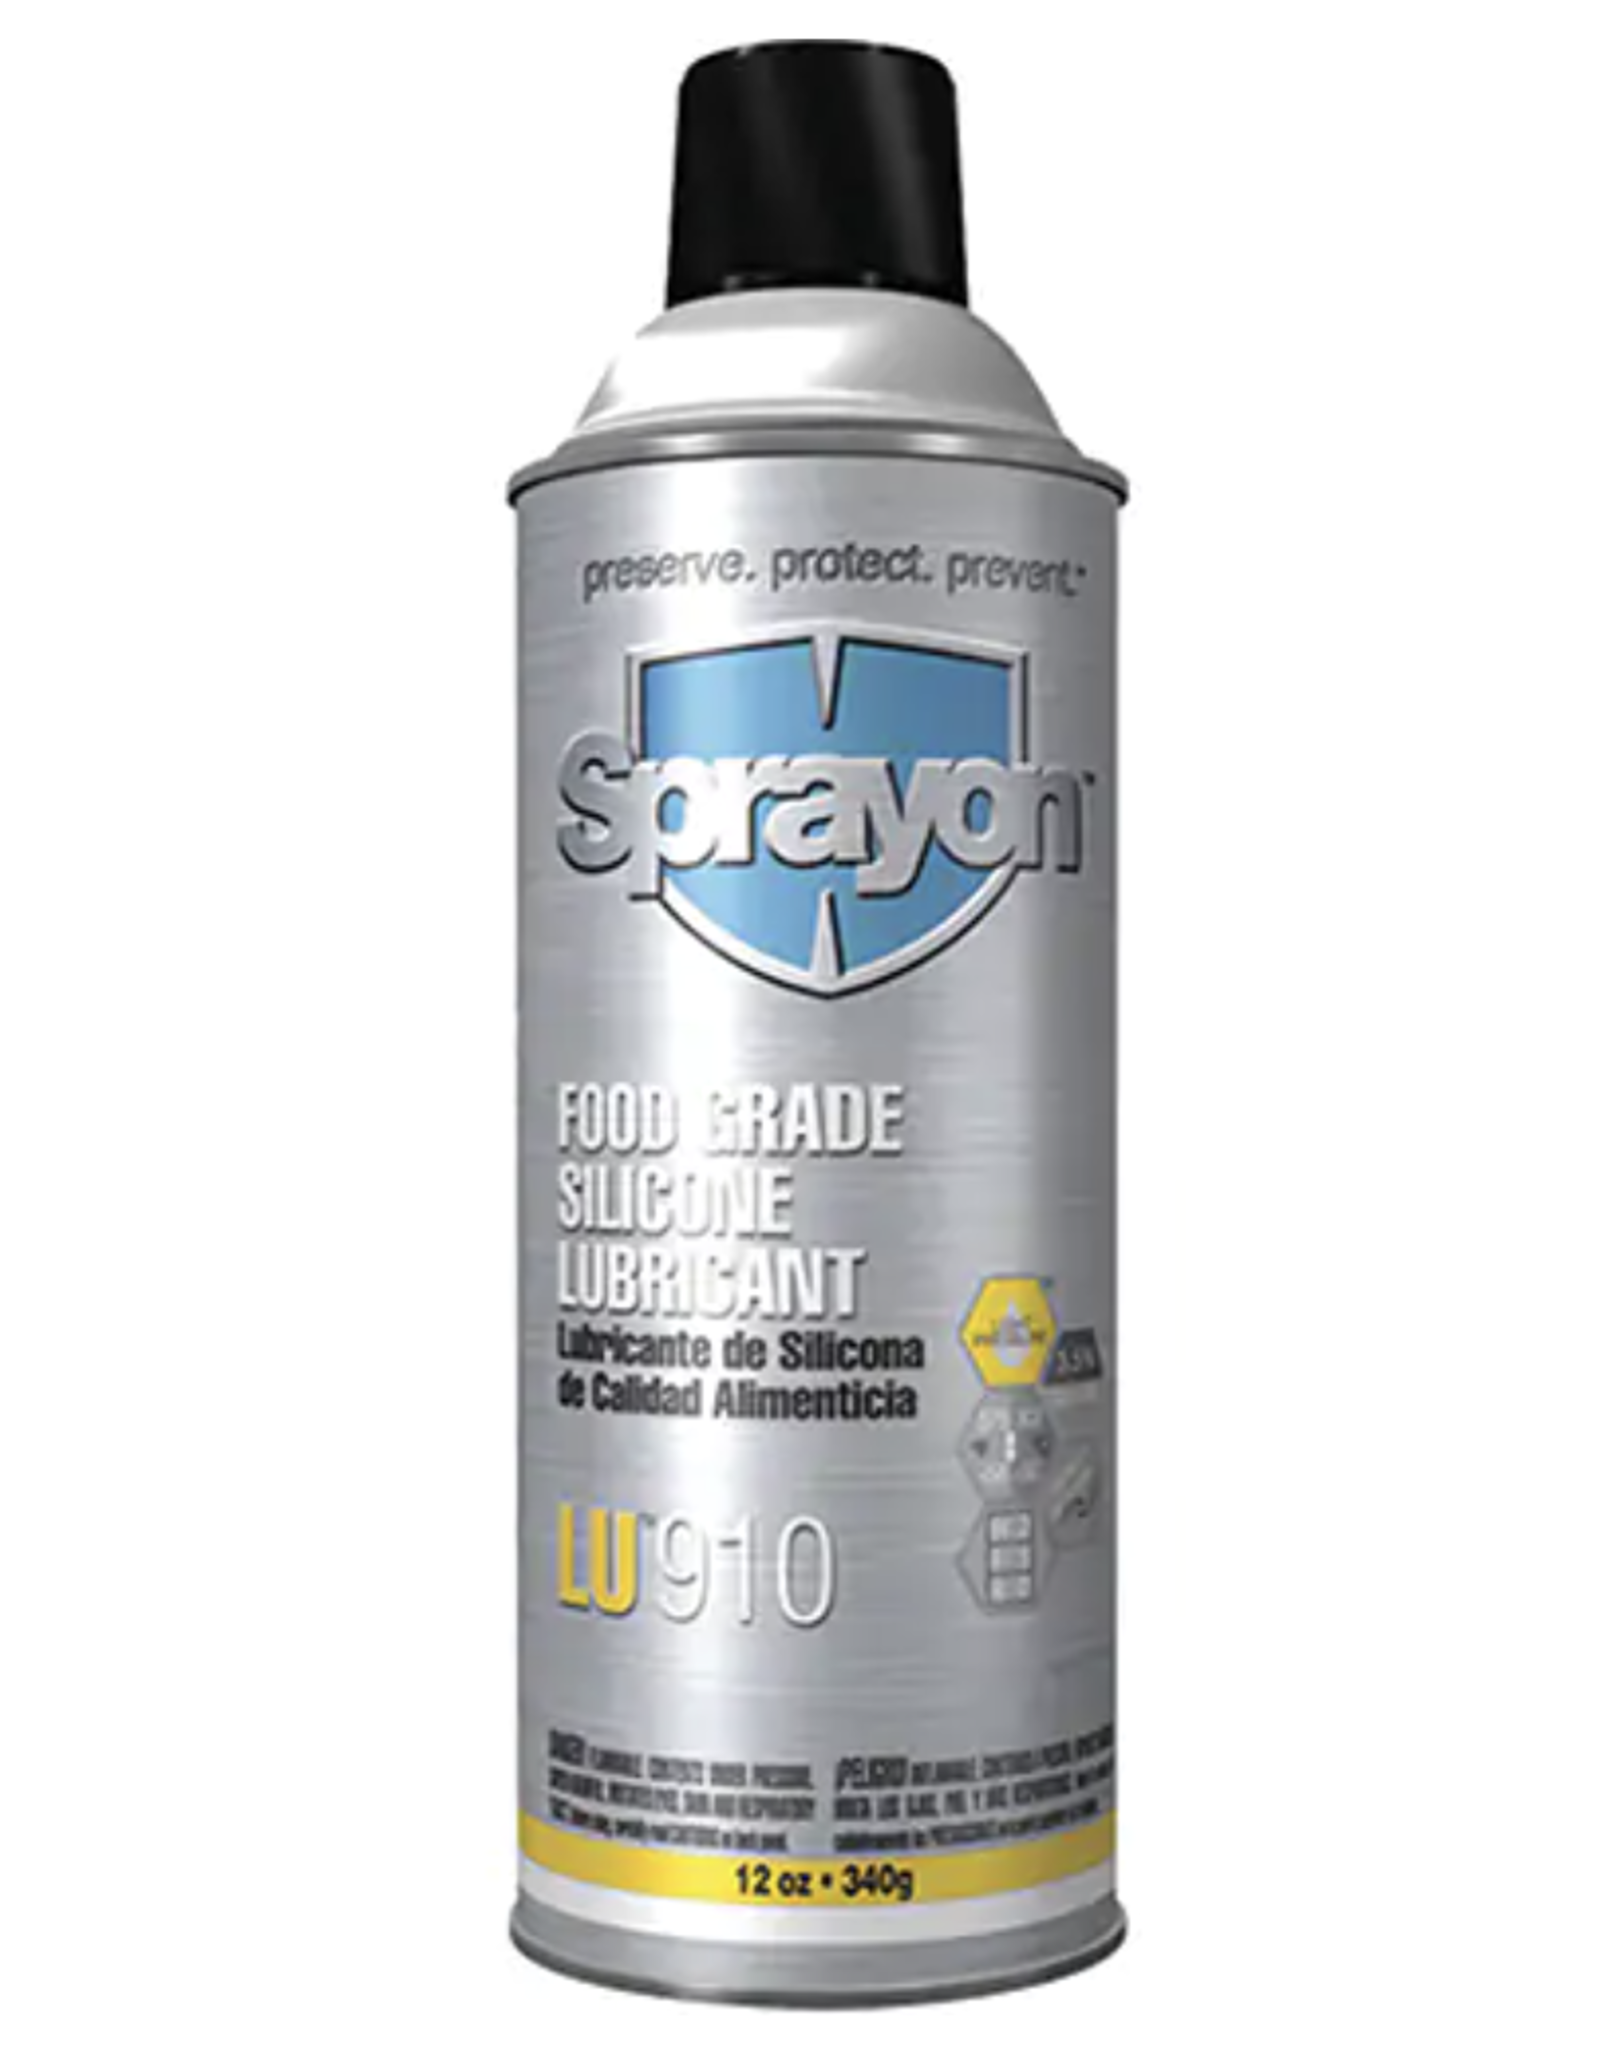 SprayOn Food Grade Silicone Lubricant - 12oz